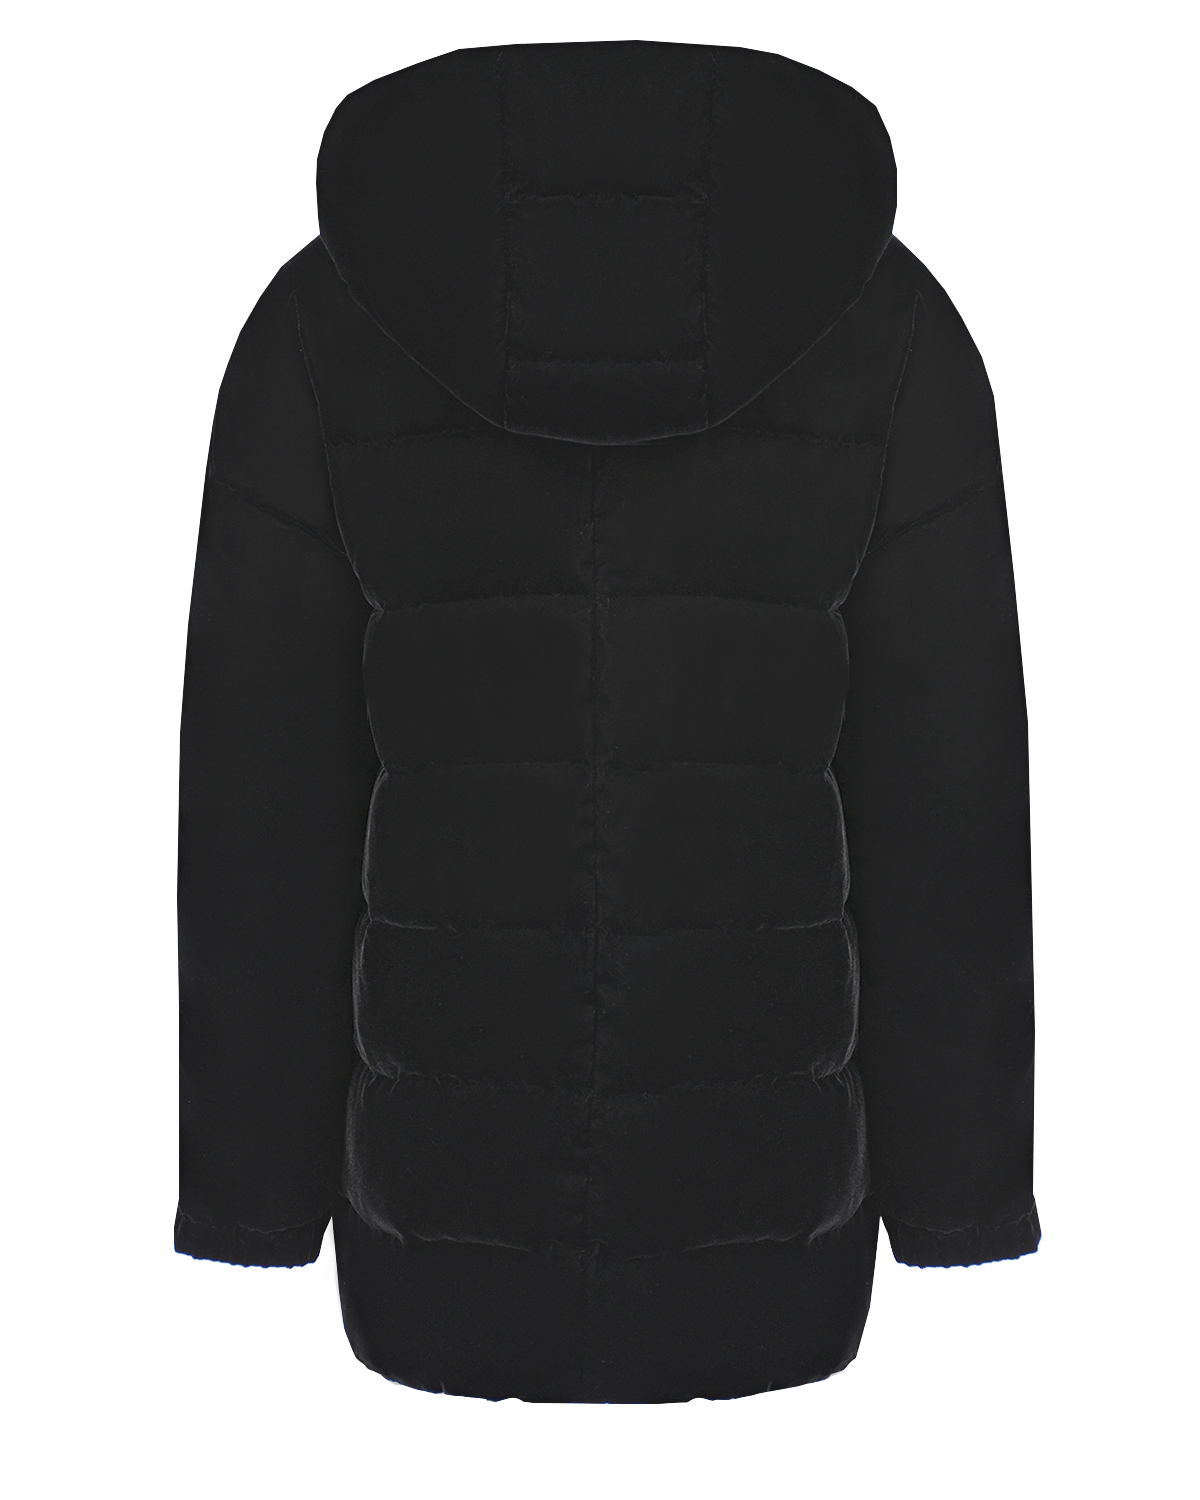 Бархатная куртка с застежкой на пуговицу Emporio Armani детская, размер 152, цвет черный - фото 2